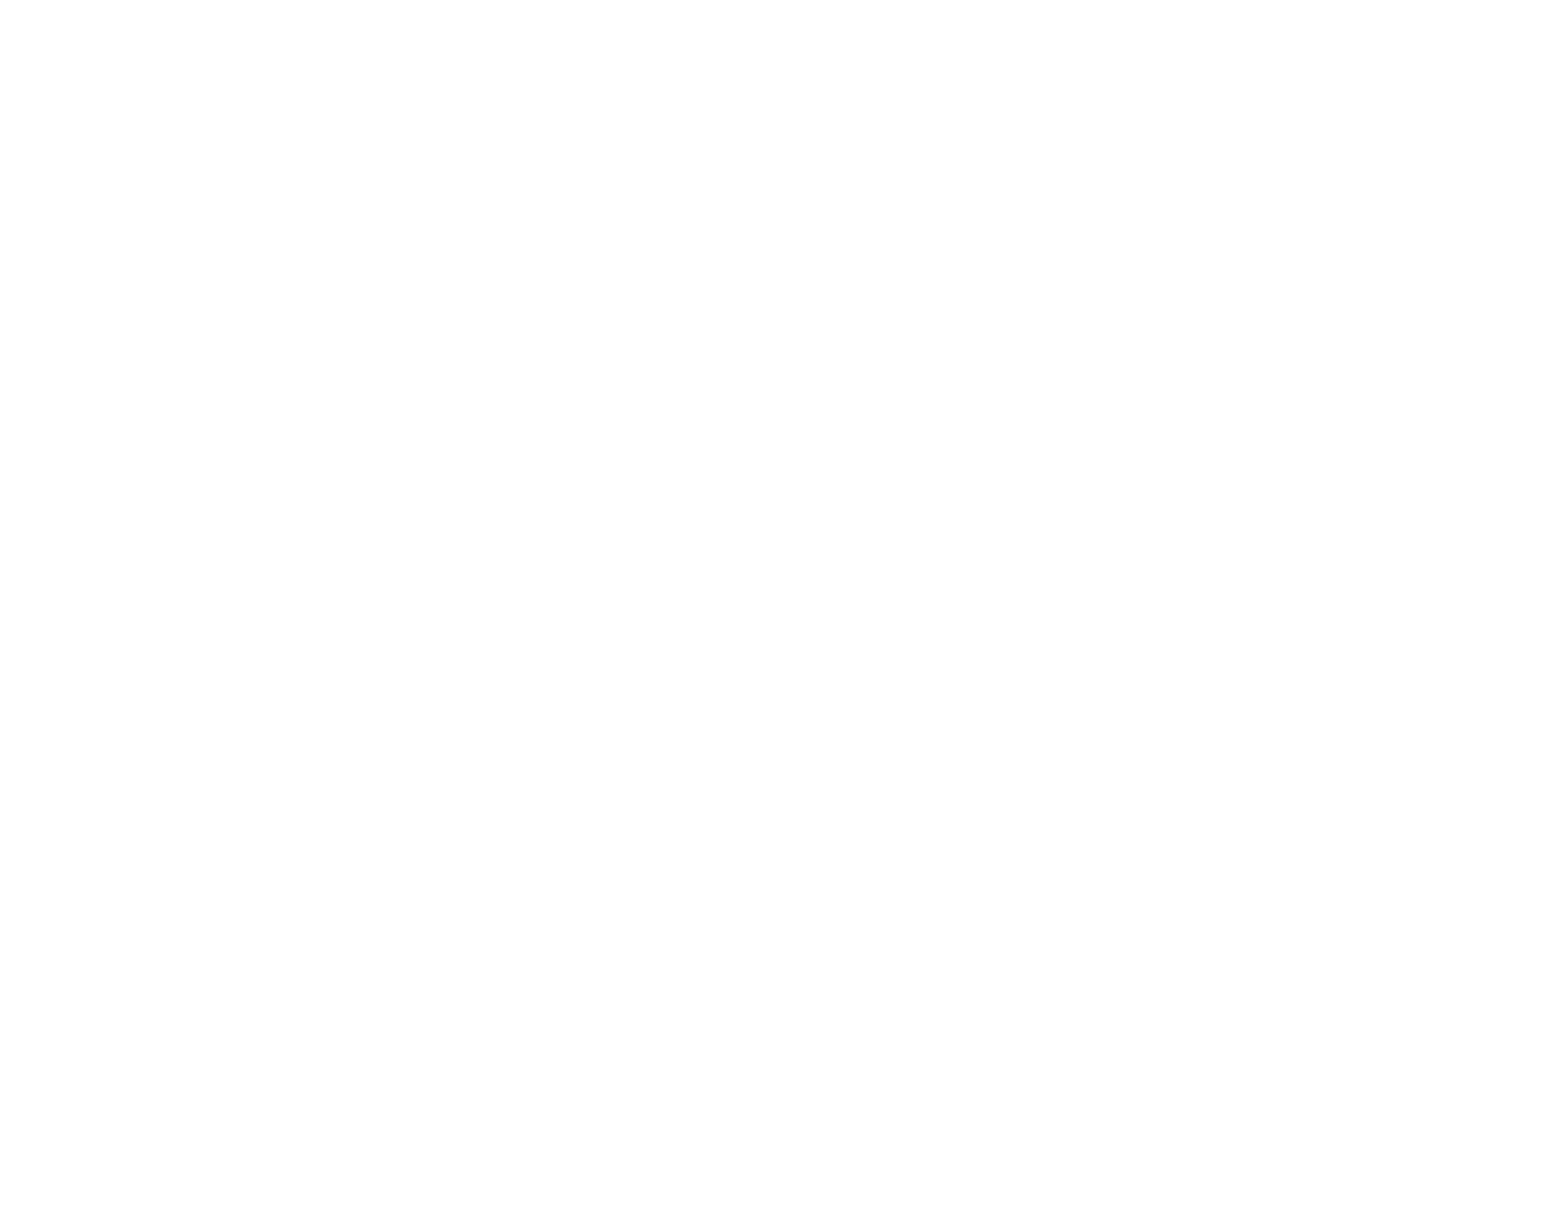 KBC logo for dark backgrounds (transparent PNG)